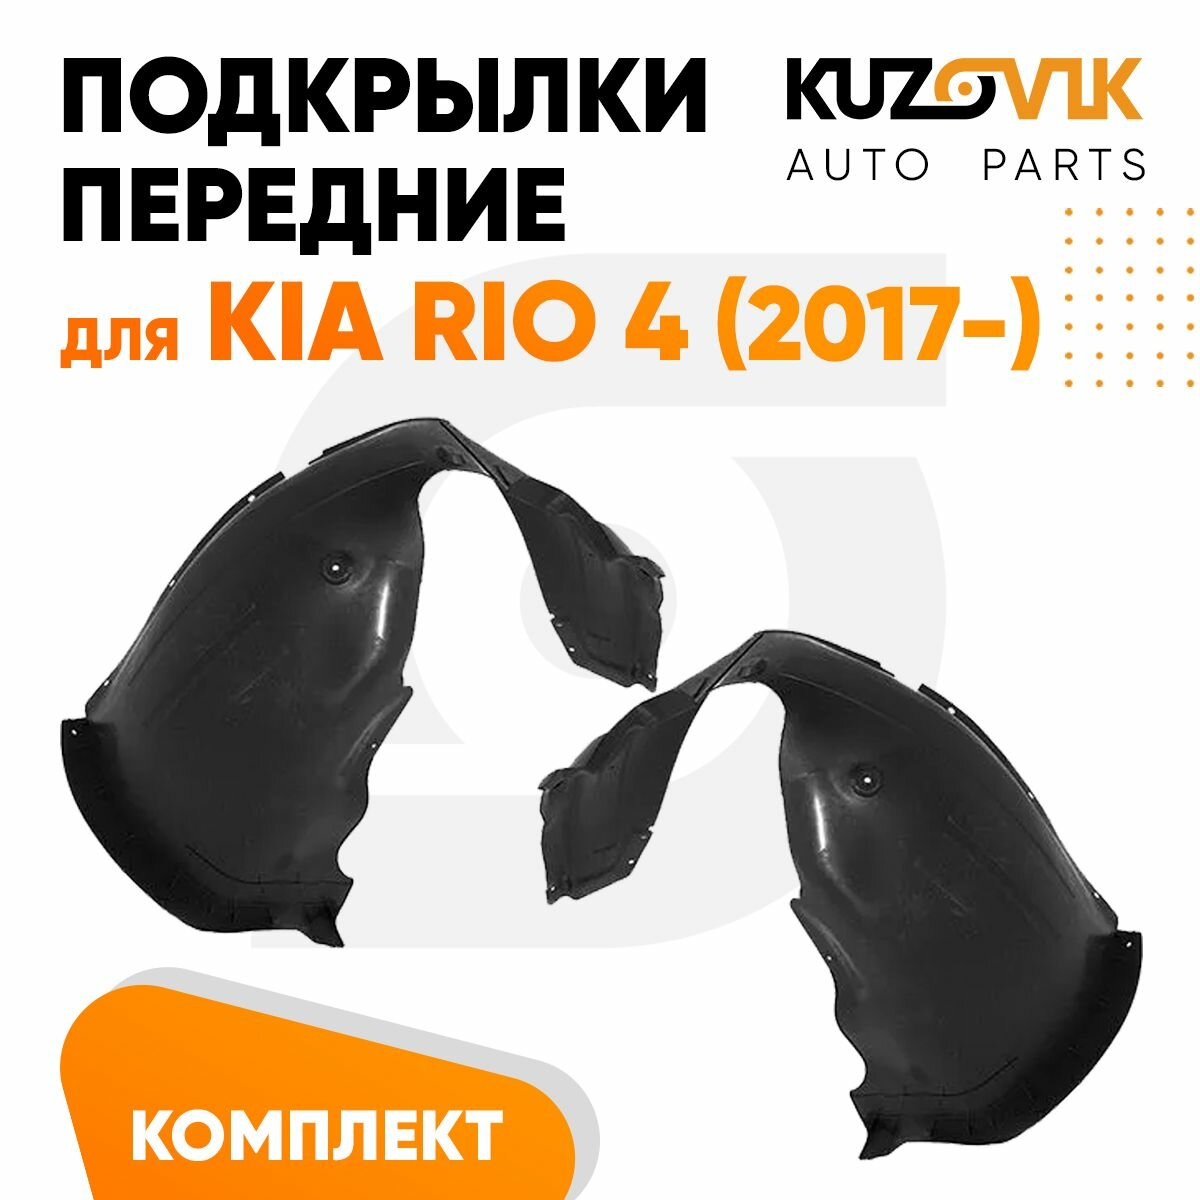 Подкрылки передние Kia Rio 4 (2017-) 2 шт правый + левый